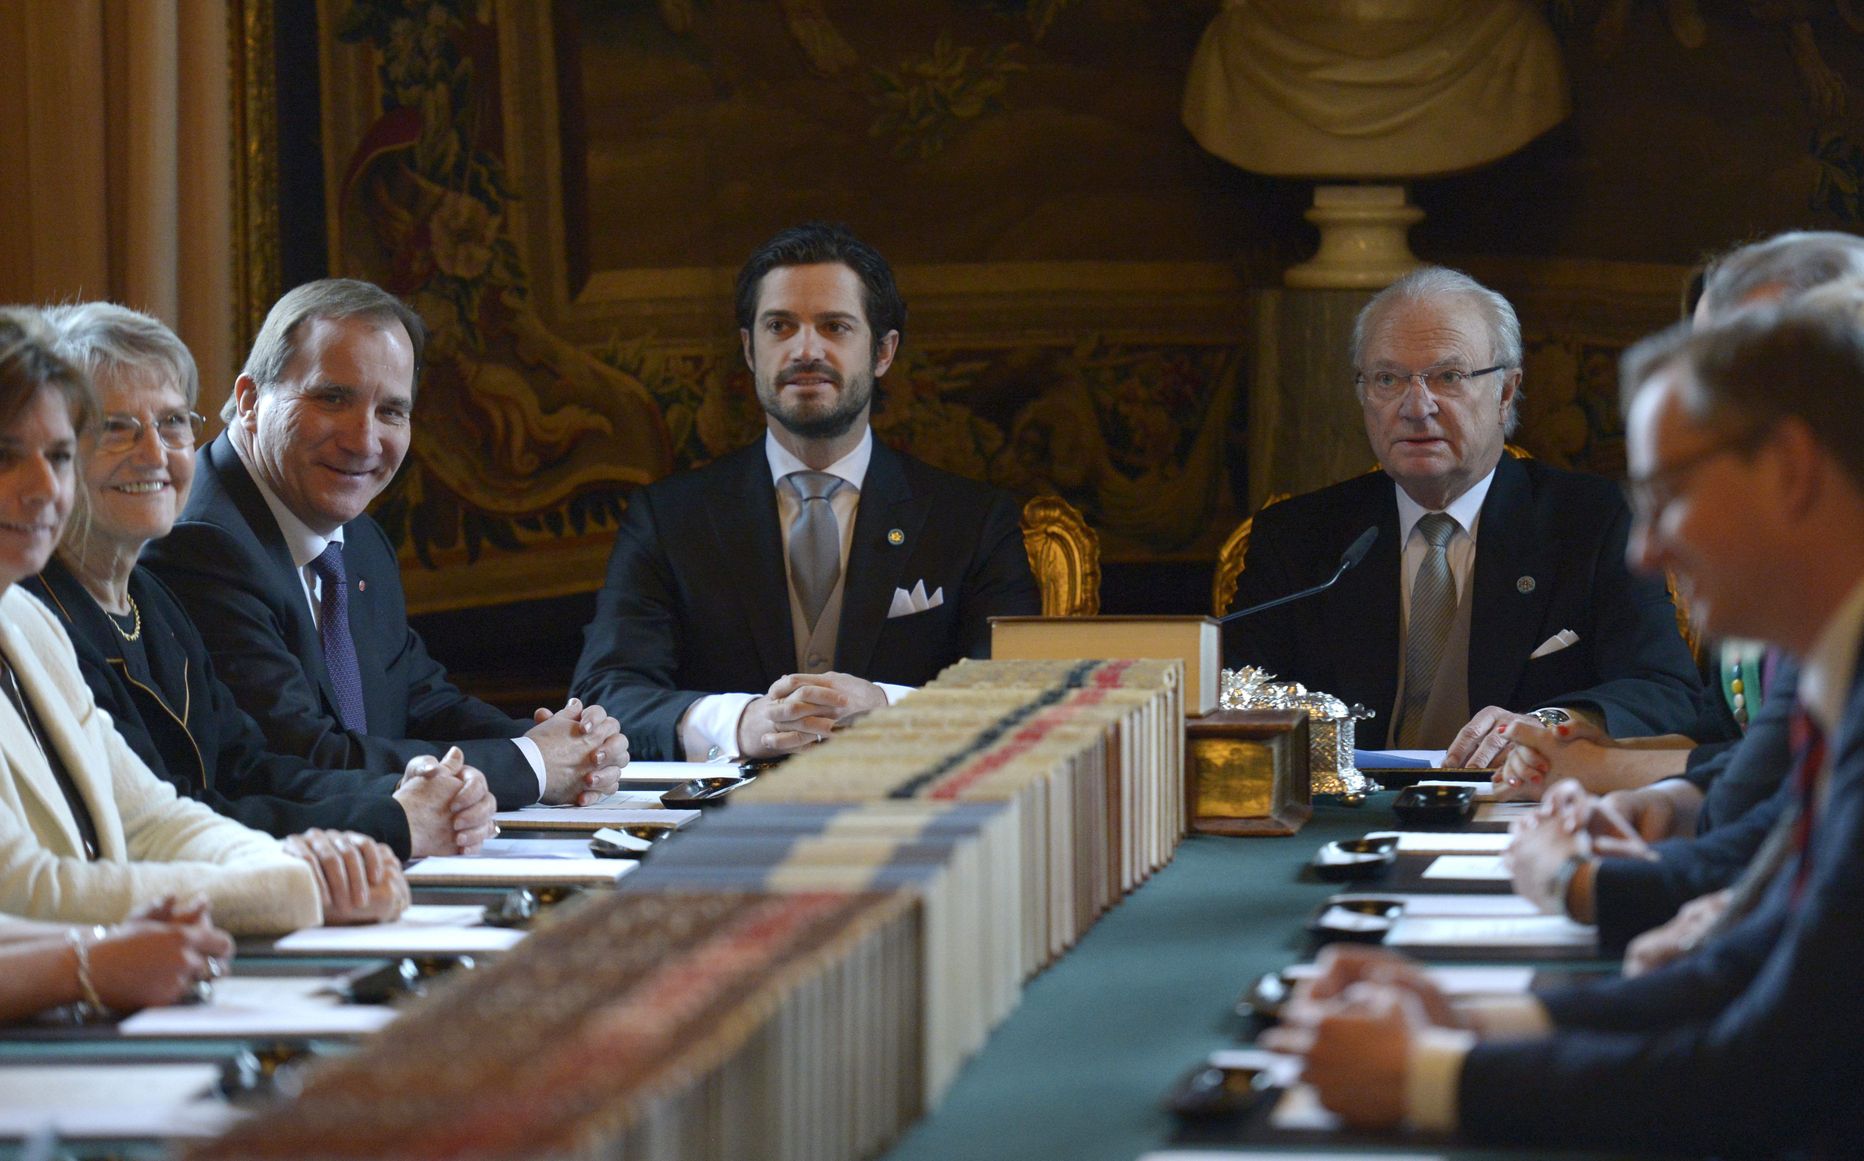 Rootsi kuningas Carl XVI Gustaf  ja prints Carl Philip tetamas valitsusele, et uue printsi nimi on Oscar Carl Olof